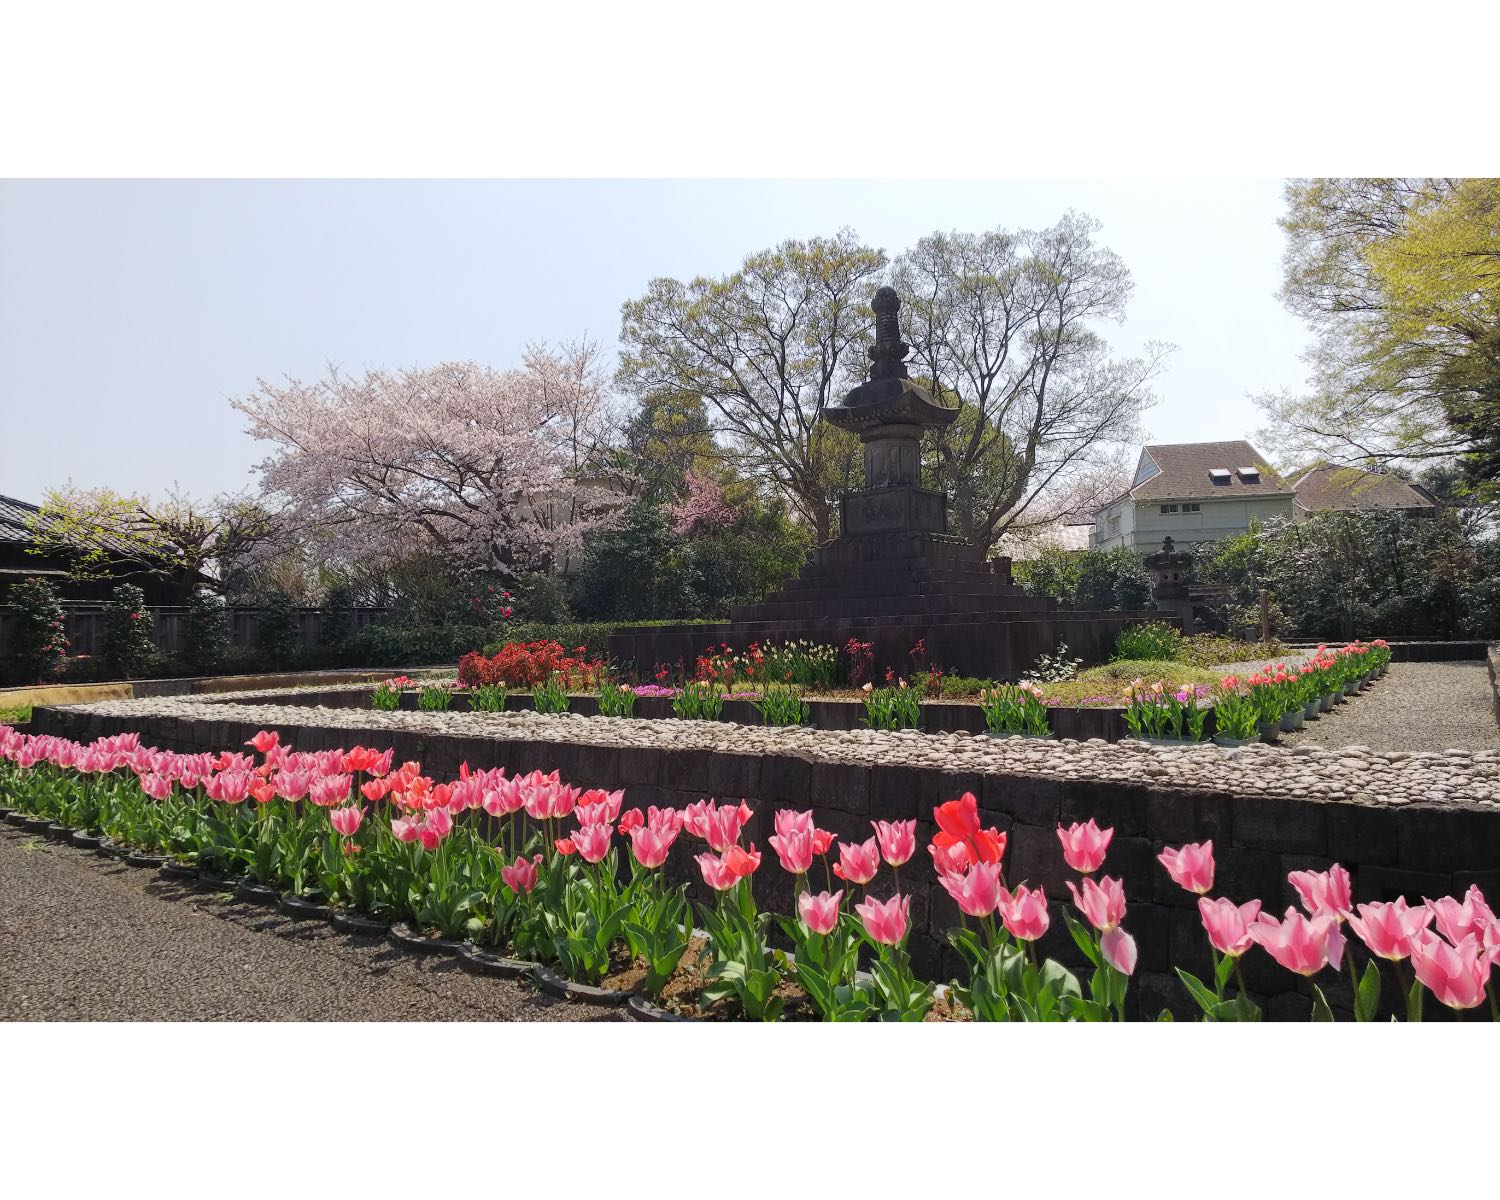 万両塚の周りの落ち葉を還した土で、池上本門寺のボーイスカウトの子供たちと一緒に毎年チューリップを育てているのだそう。4月の花まつりの時期に見頃を迎え、桜とともに楽しめる。